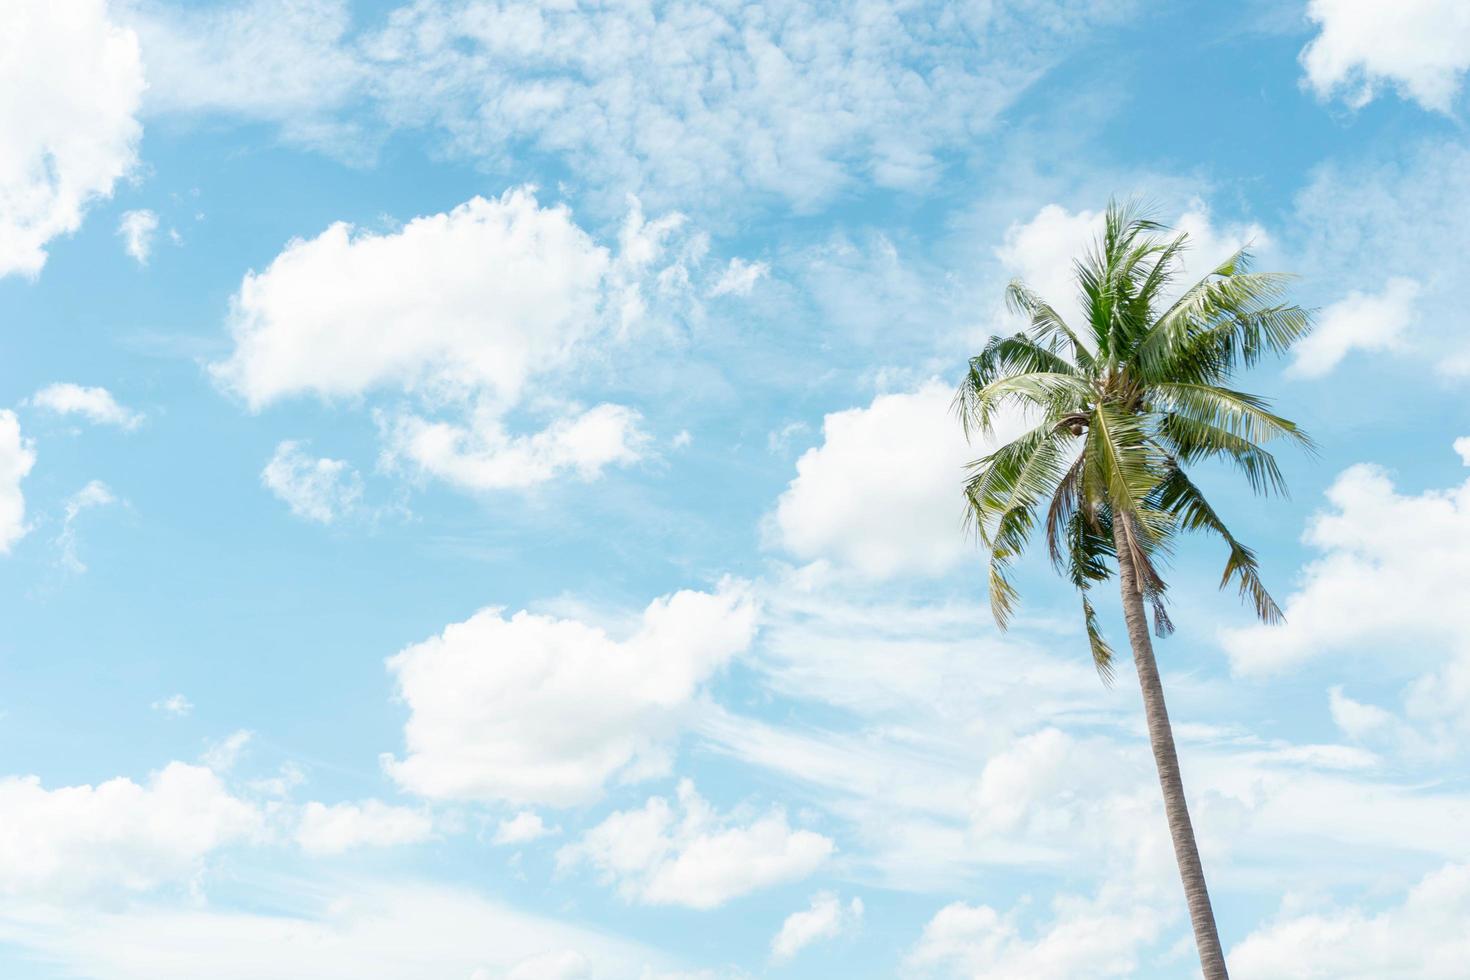 kokospalmer och blå himmel bakgrund med kopia utrymme foto